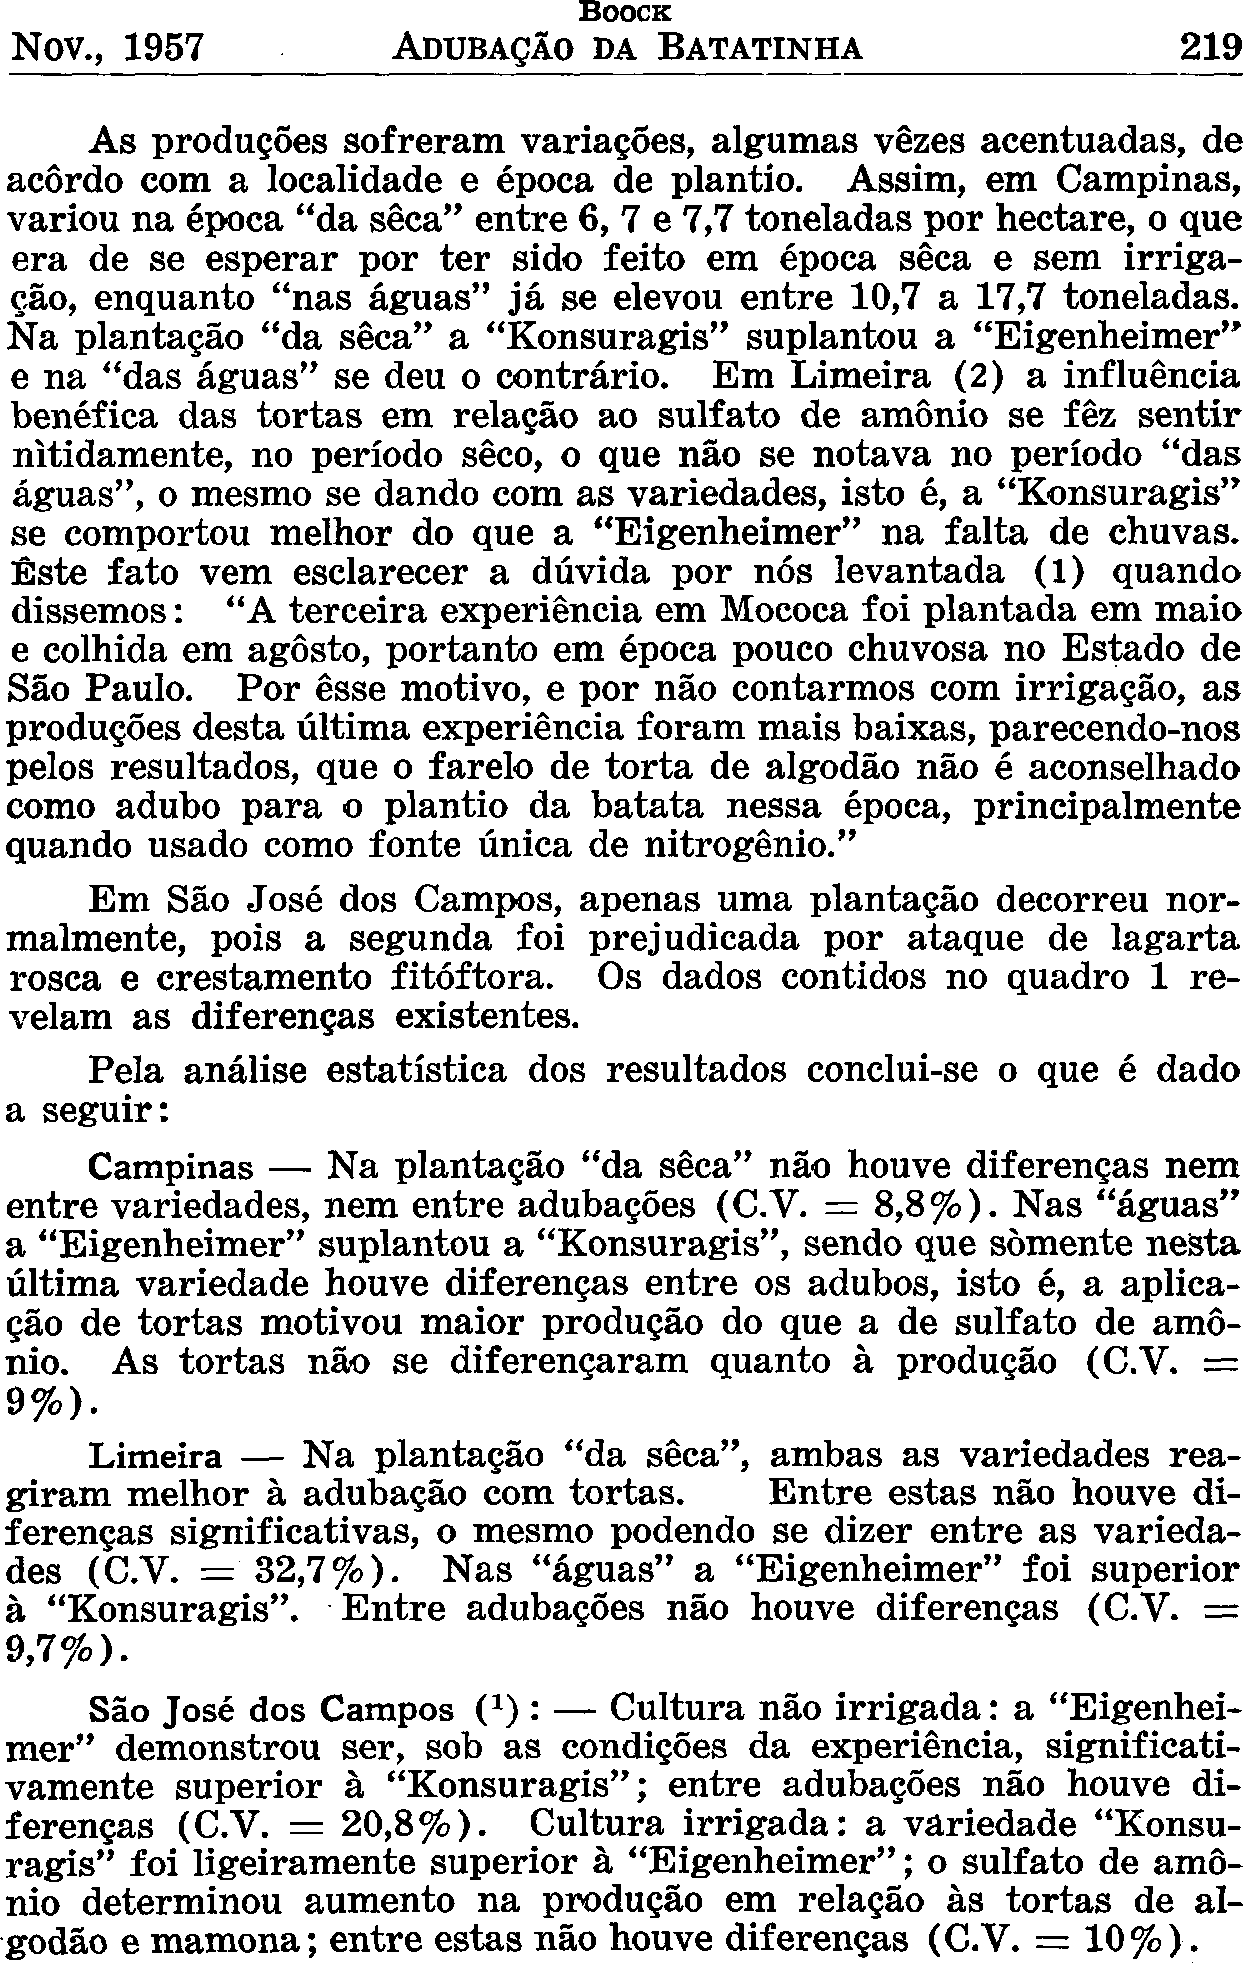 Nov., 1957 BOOCK ADUBAÇÃO DA BATATINHA 219 As produções sofreram variações, algumas vezes acentuadas, de acordo com a localidade e época de plantio.